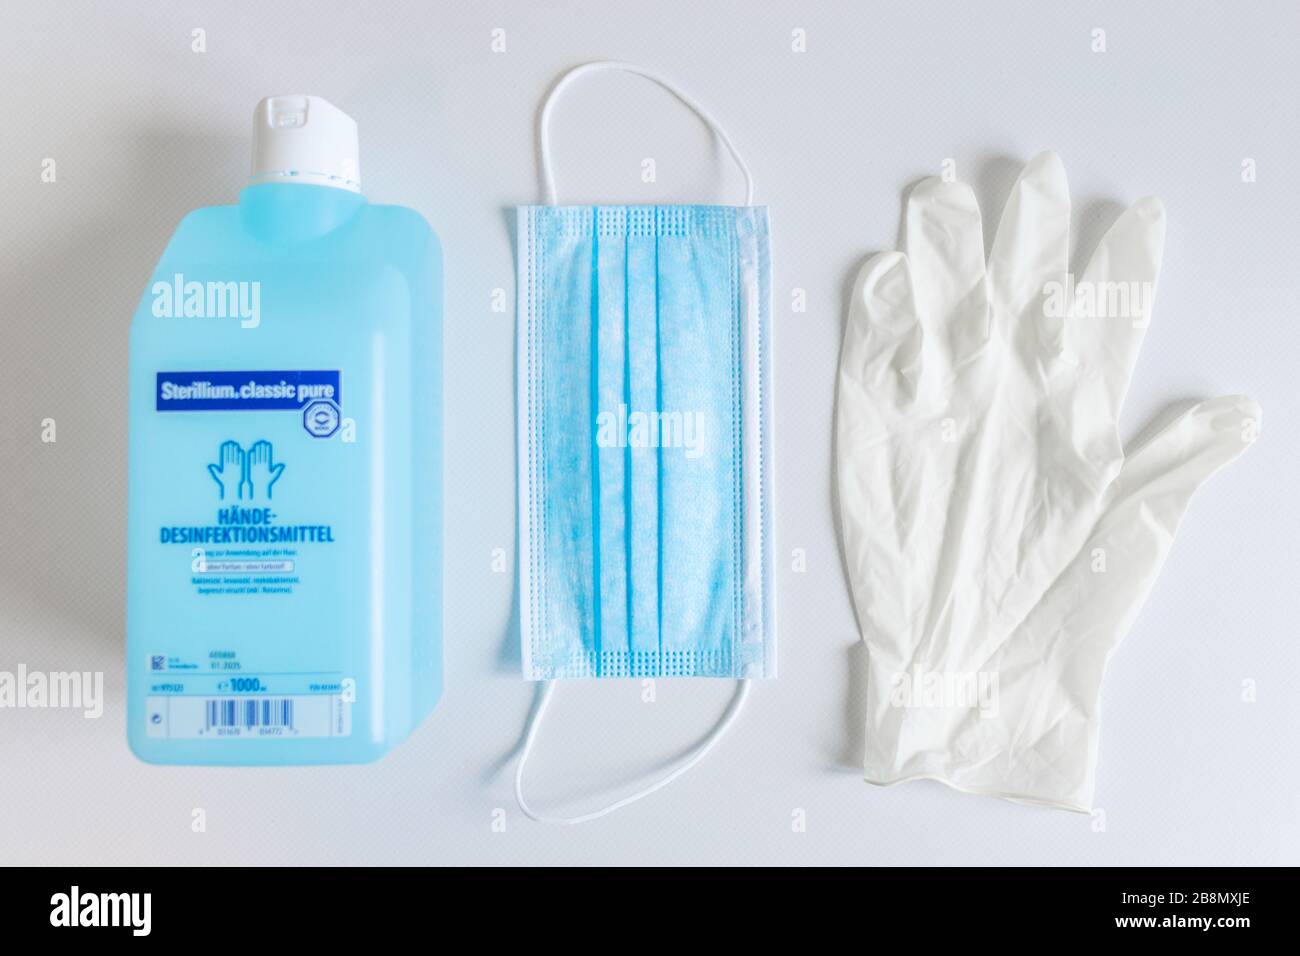 DEUTSCHLAND - 22. MÄRZ 2020: Corona-Virenschutz zu Hause. Gesichtsmaske, Handschuhe und Händedededesinfektionsmittel für sauberen und hygienischen Atem und Hände gegen Koronavir Stockfoto